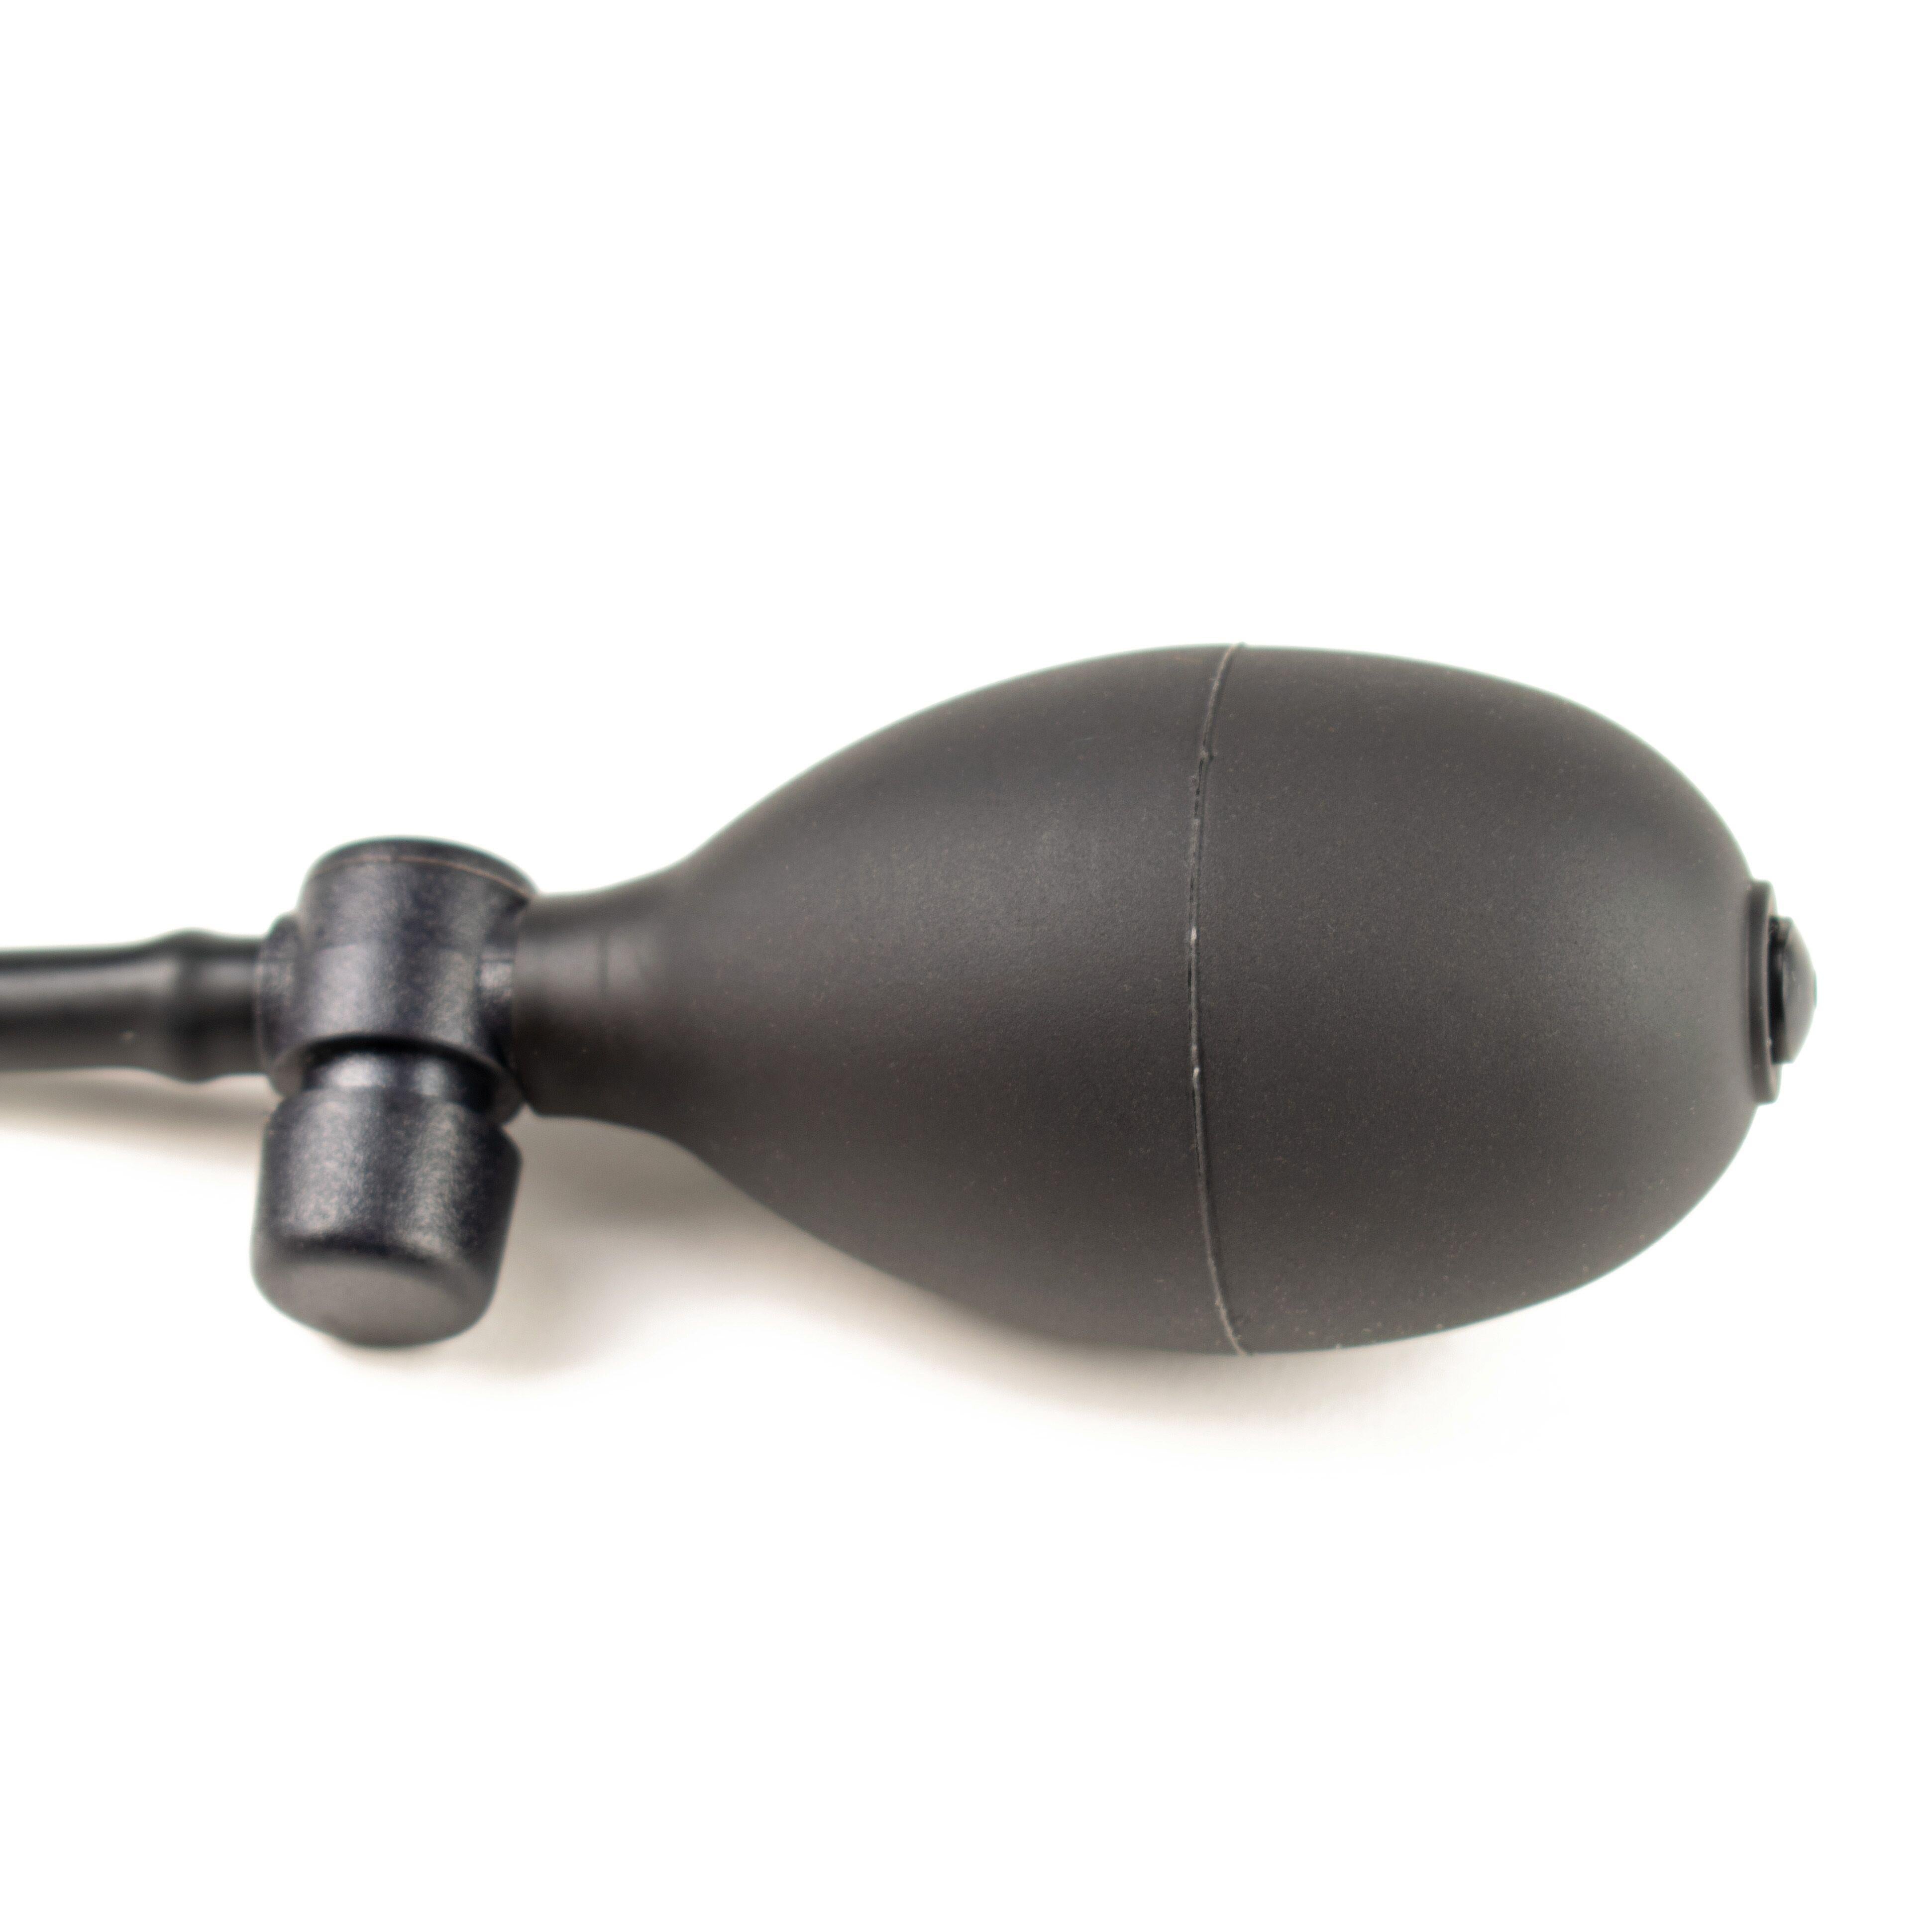 Rubberfashion Latex Butt Plug - Anal Plug - aufblasbarer Analplug mit Pumpe für Frauen und Männer